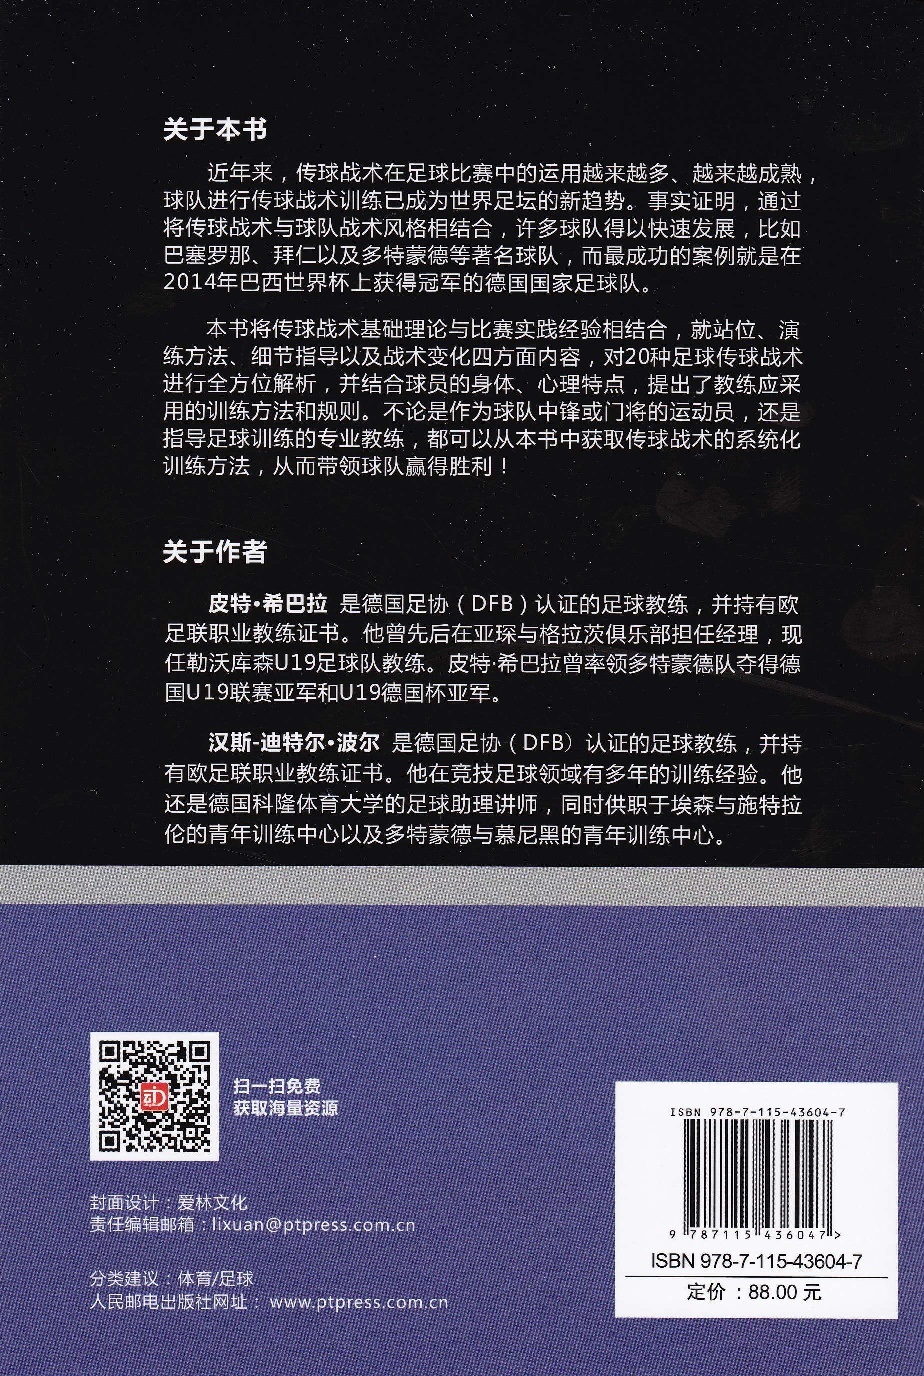 Modernes Passspiel in Chinesisch - Rückseite